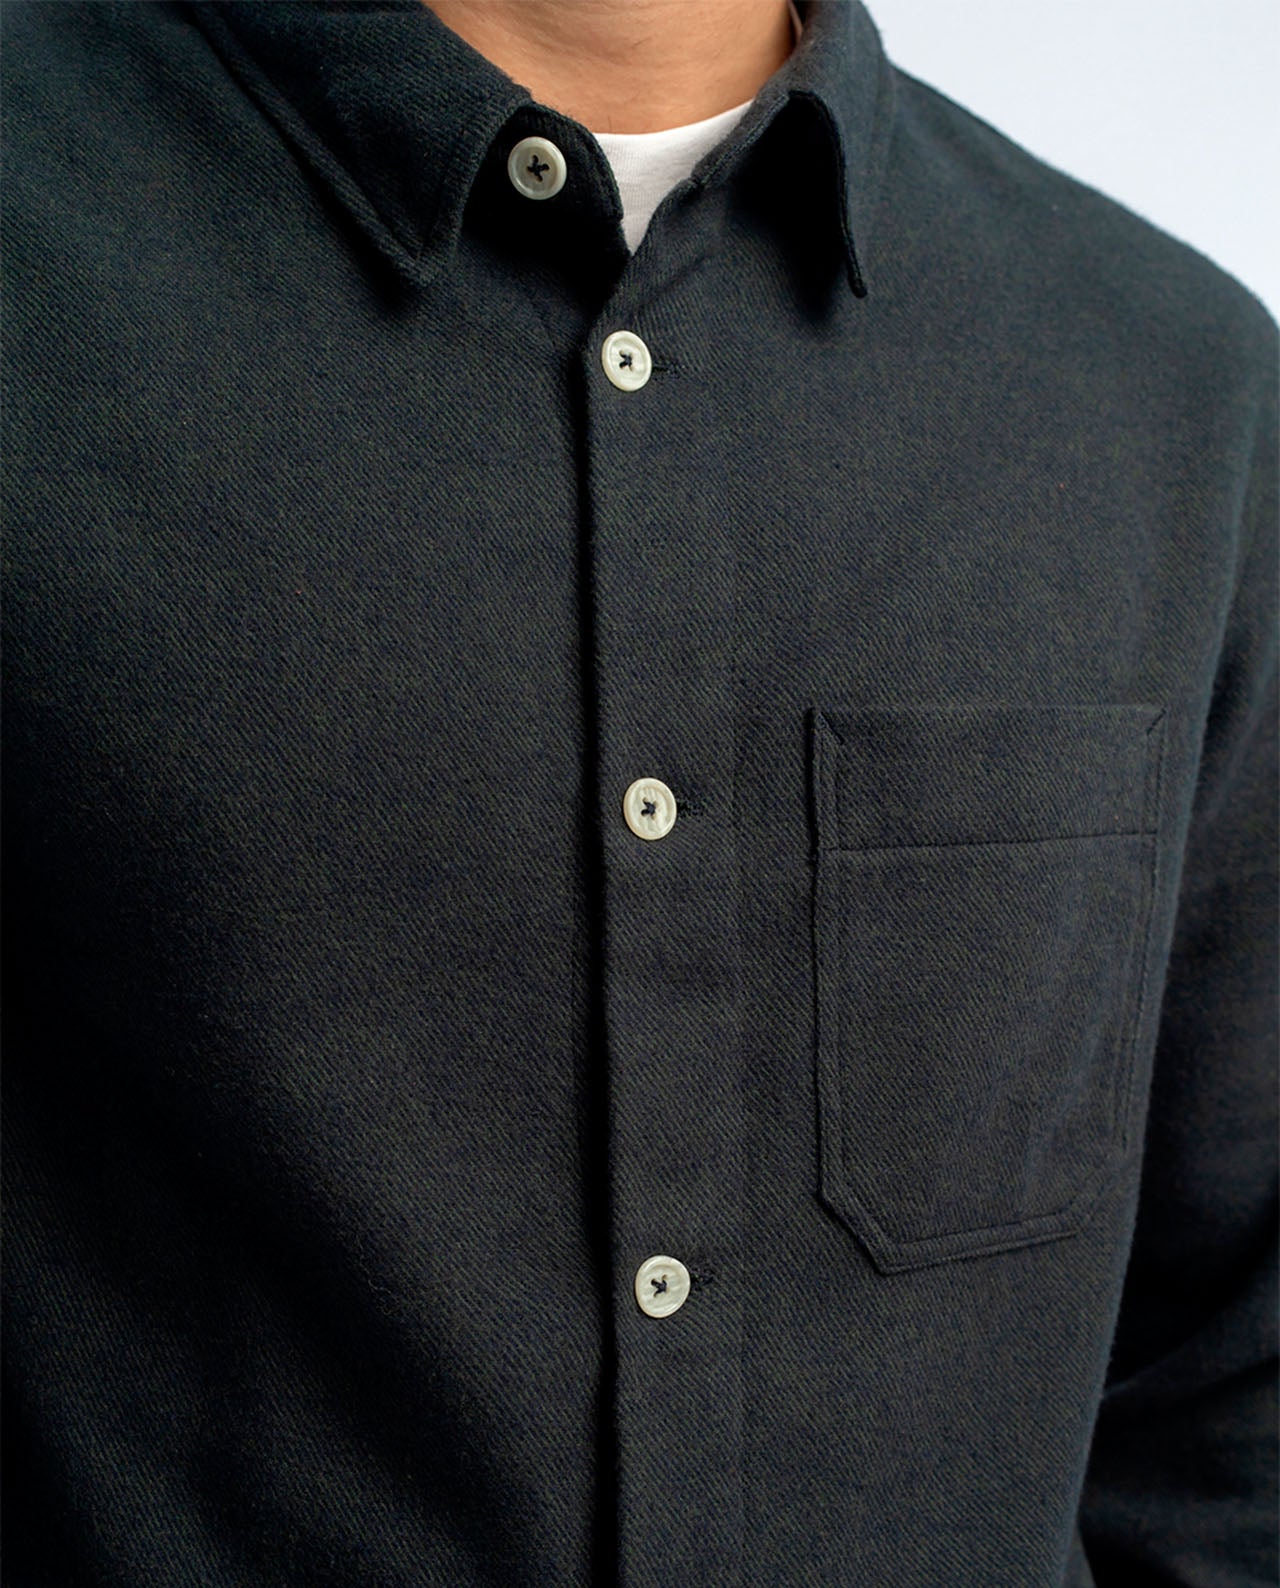 marché commun rotholz chemise flanelle homme coton biologique éco-responsable bleu marine